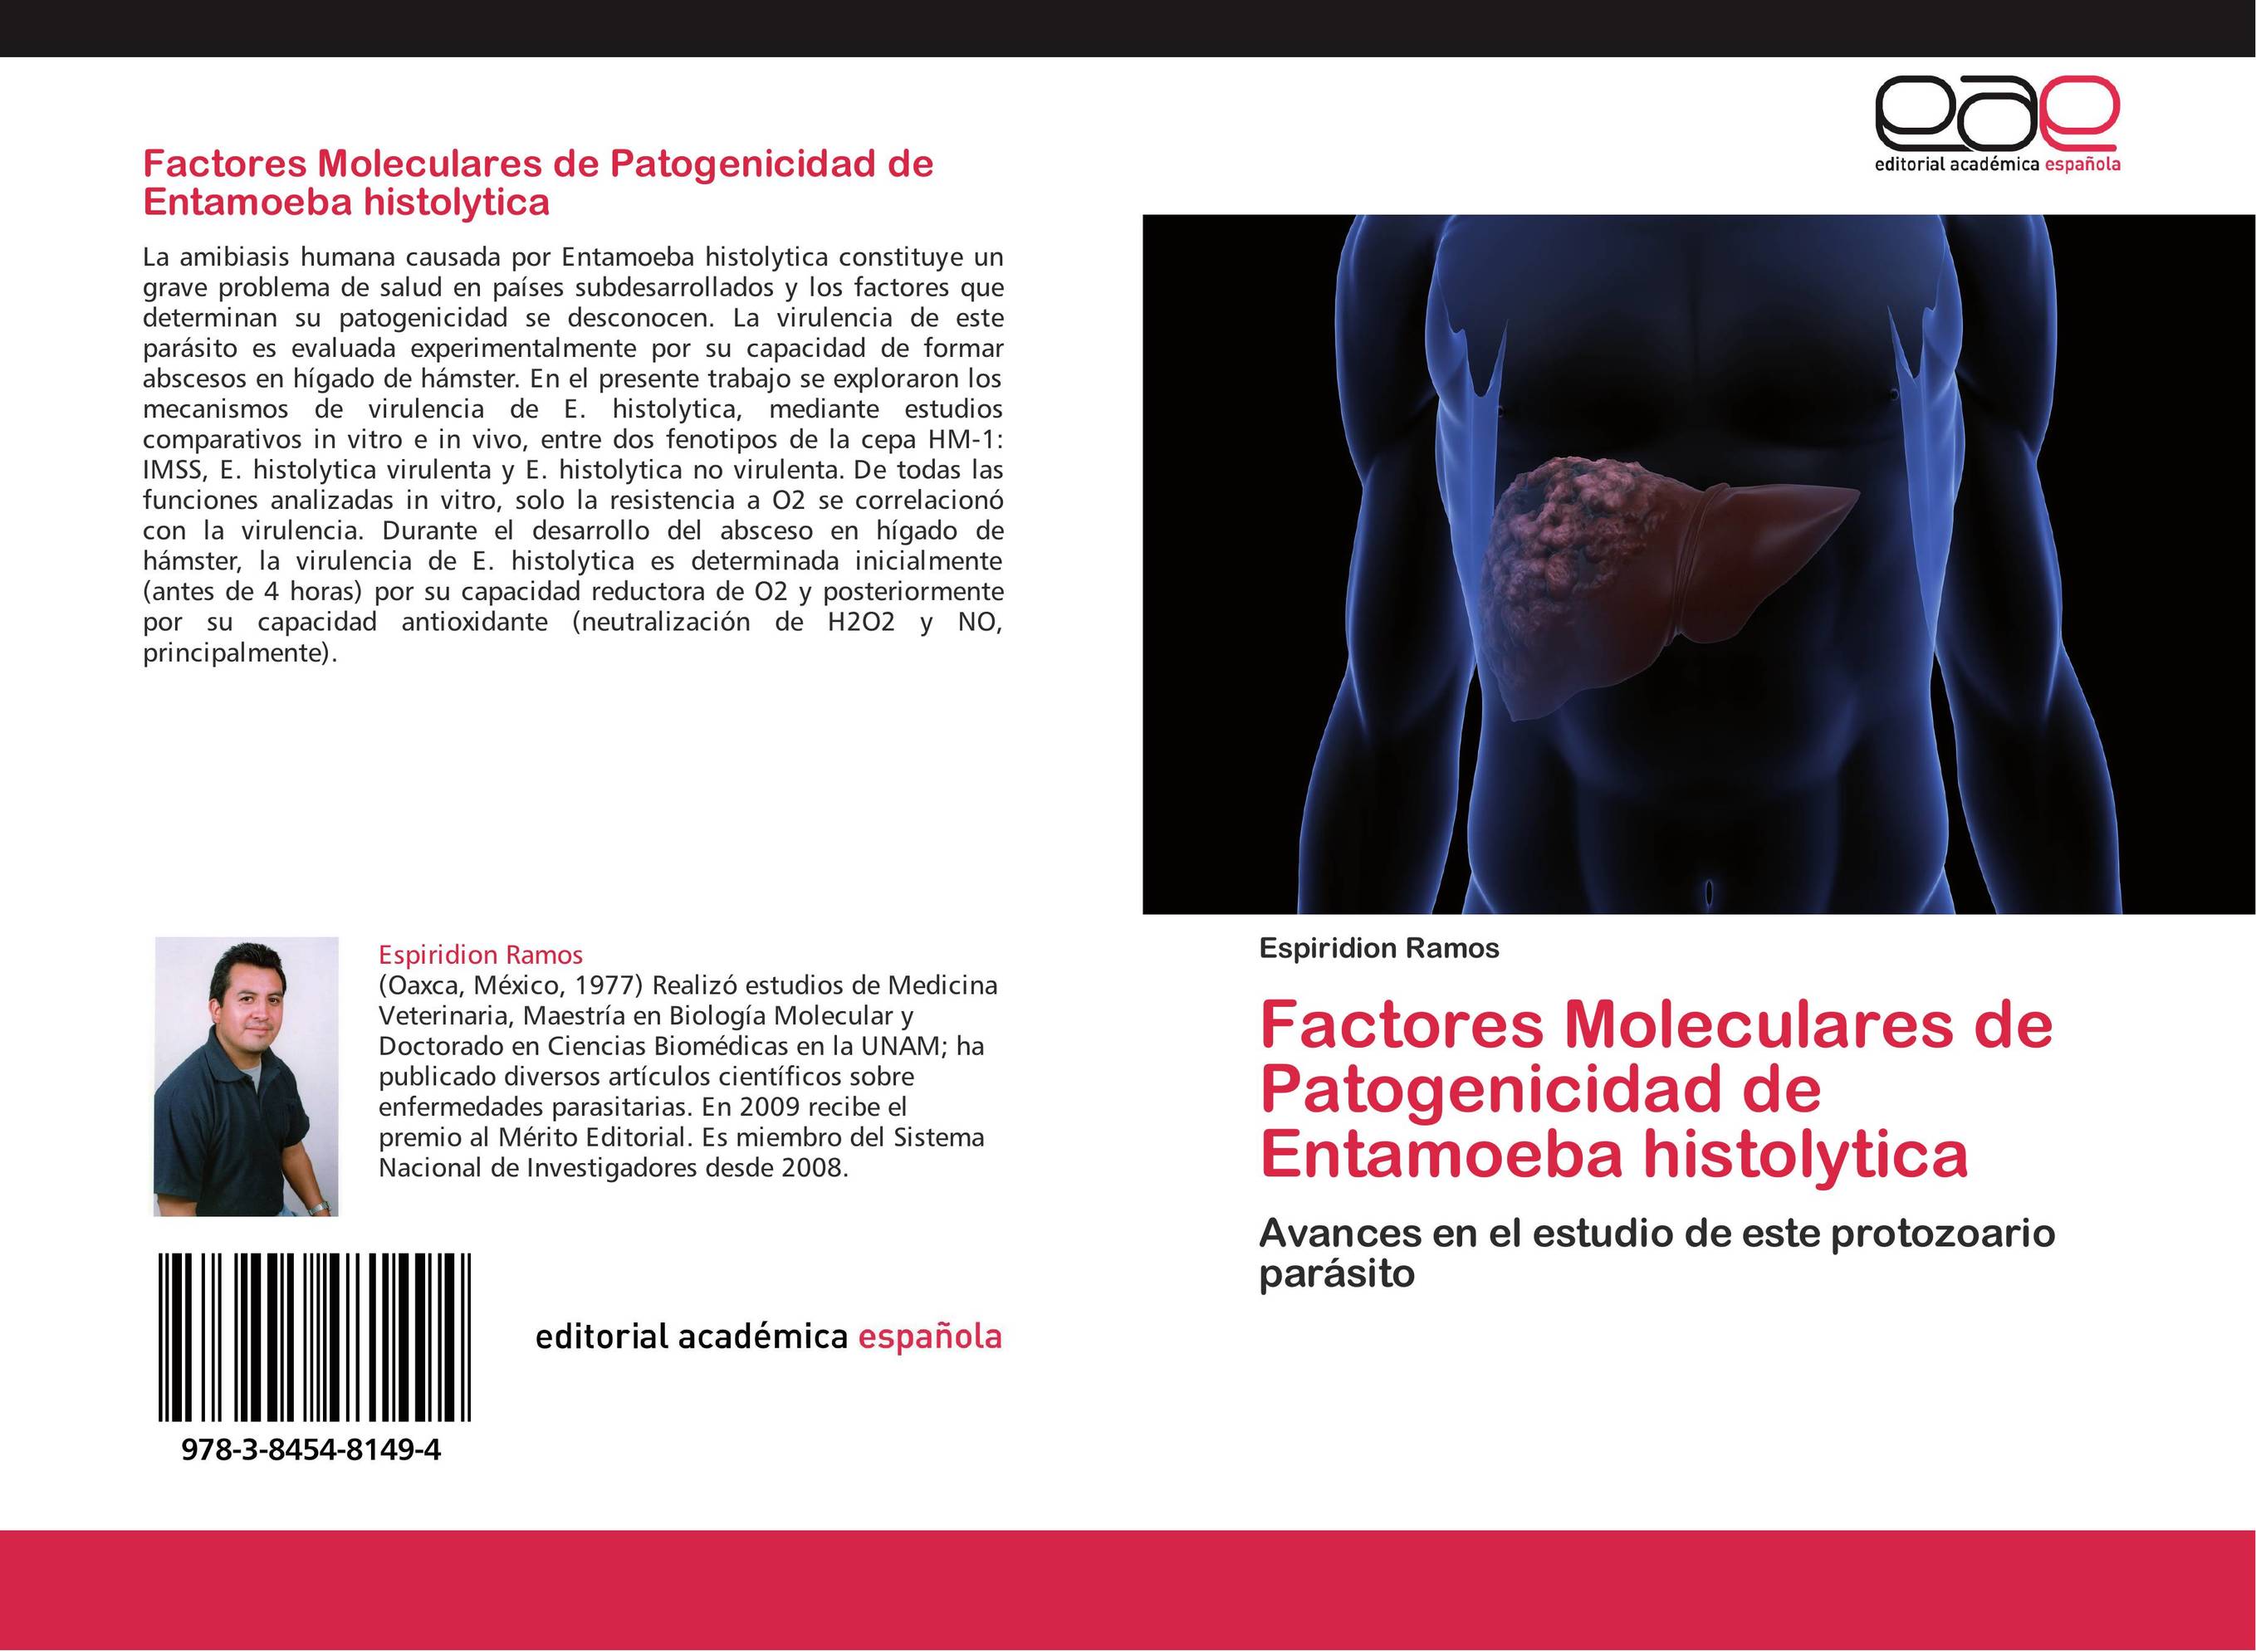 Factores Moleculares de Patogenicidad de Entamoeba histolytica